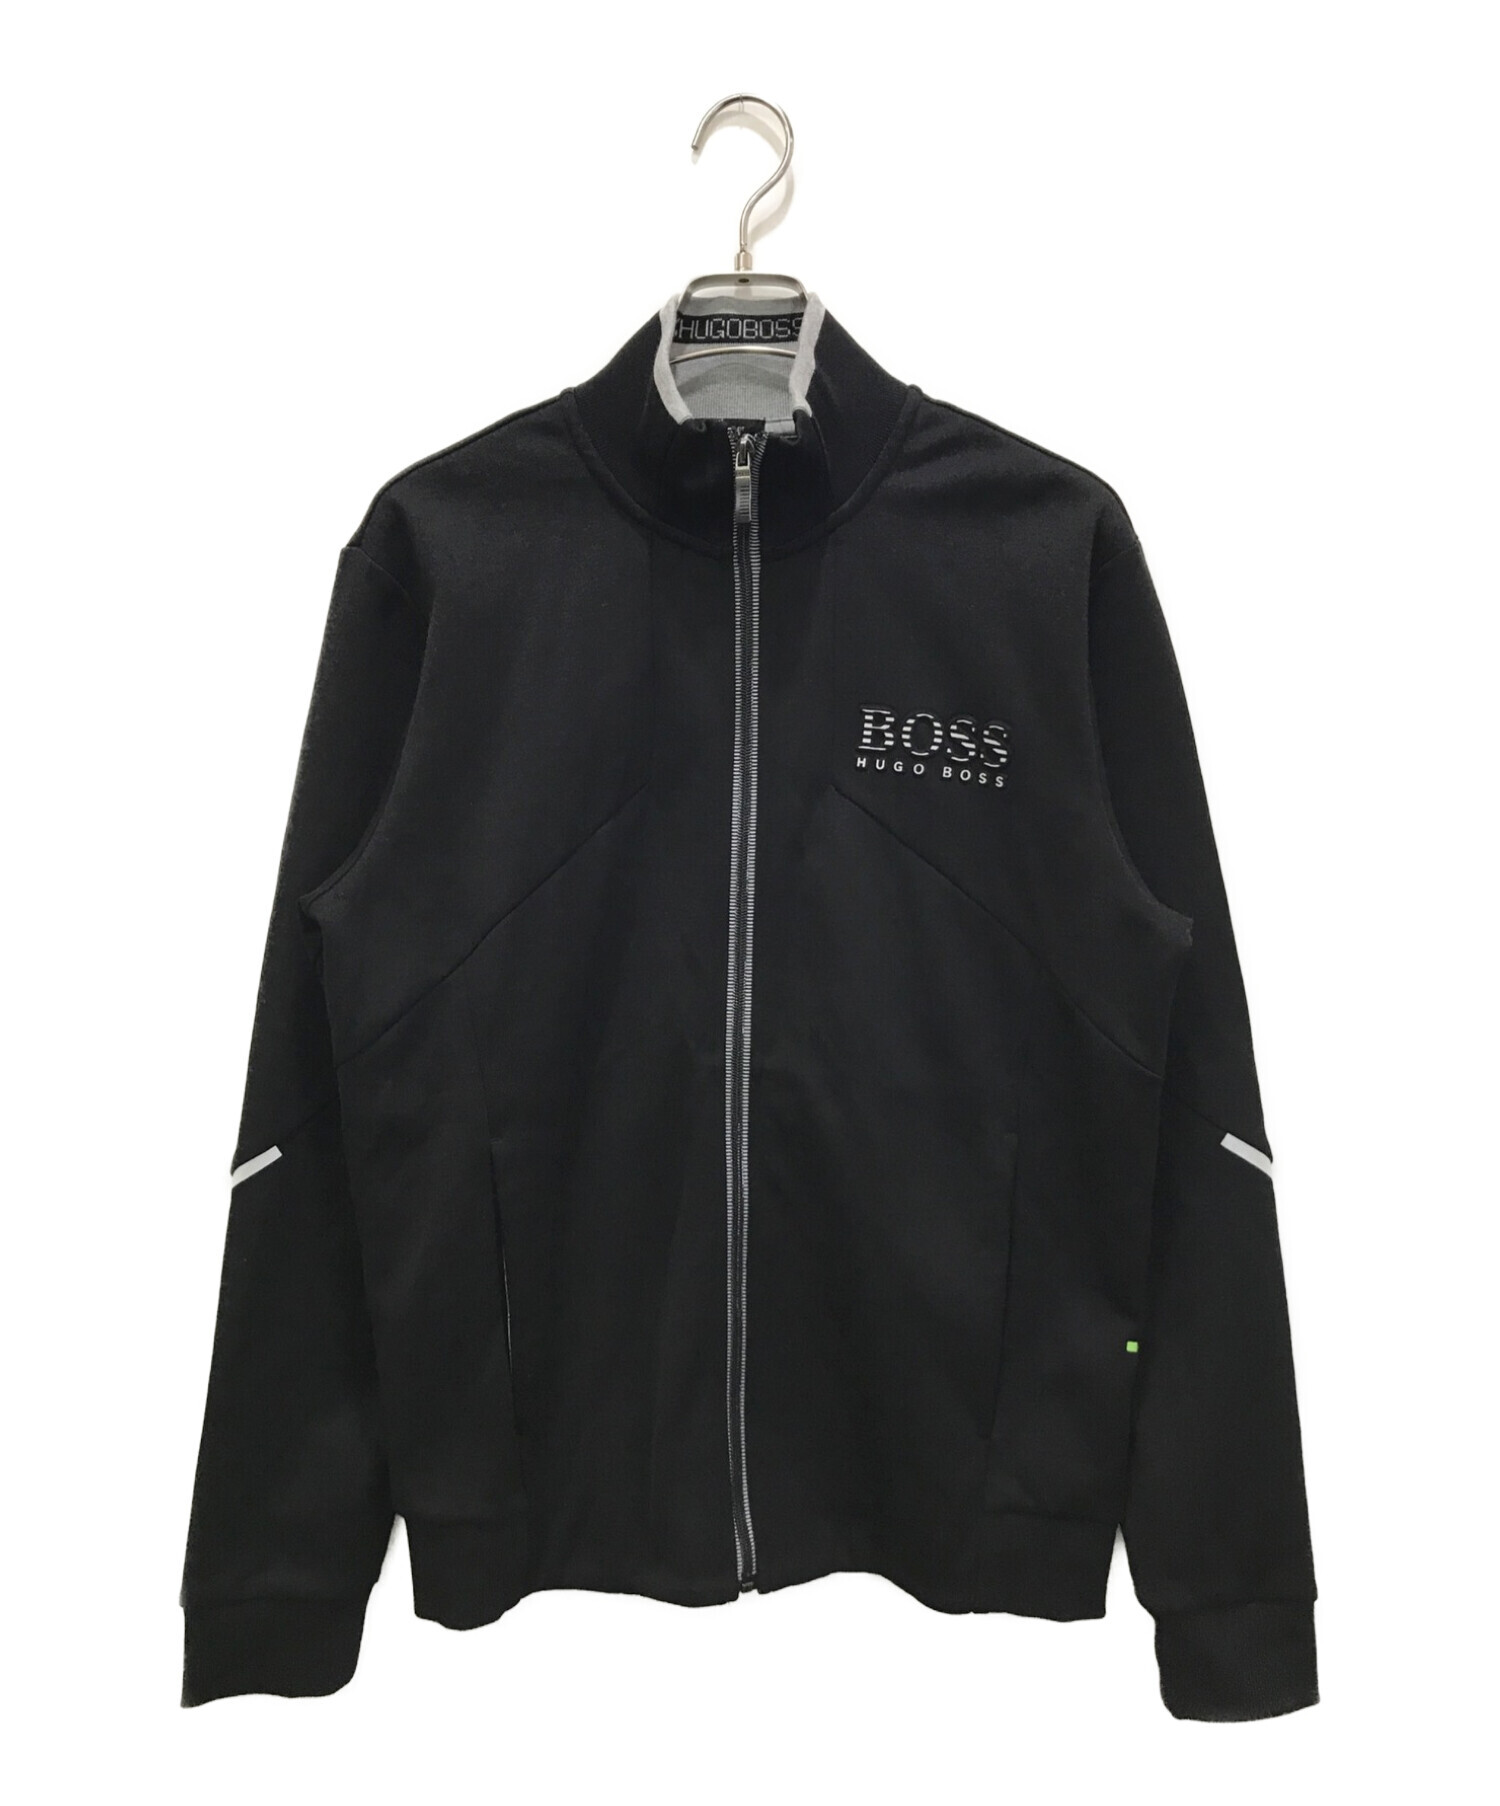 HUGO BOSS (ヒューゴ ボス) ジップアップジャケット ブラック サイズ:M